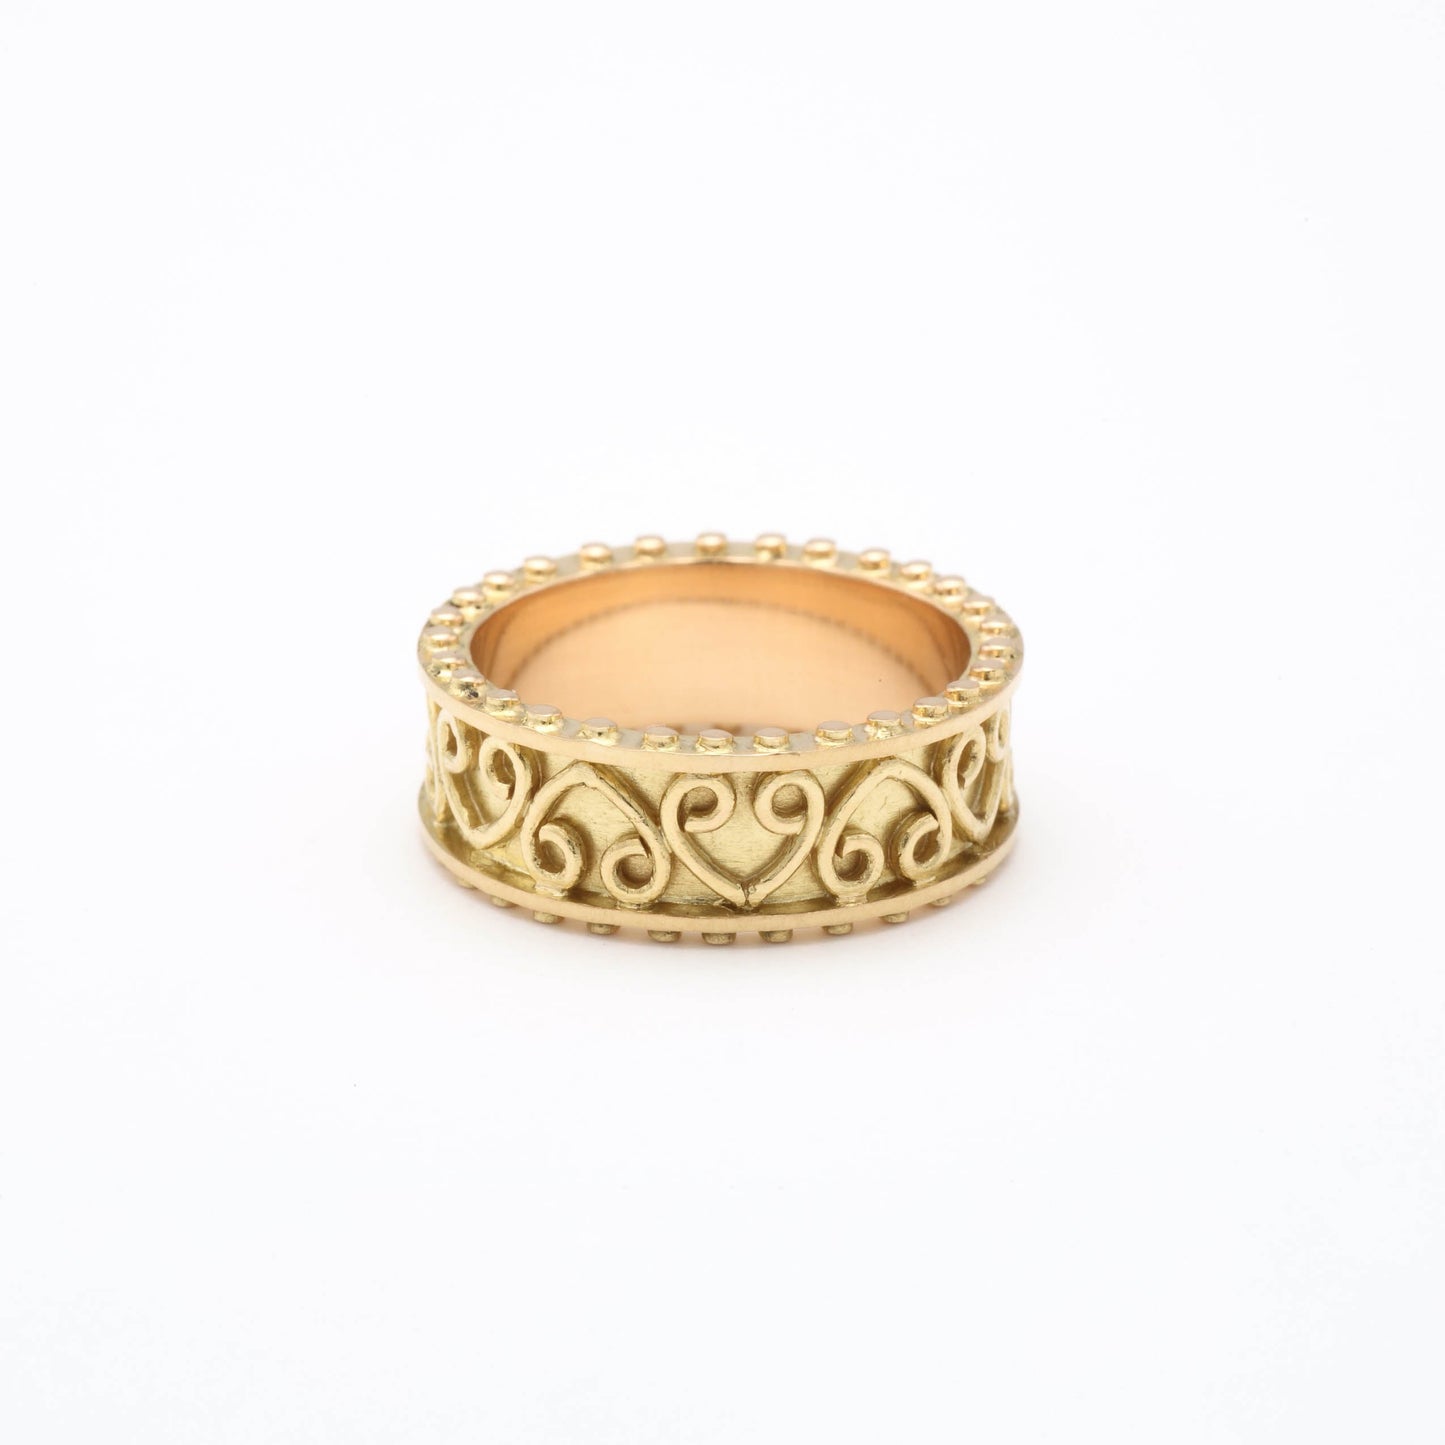 The Neetu Gold Ring by Rasvihar